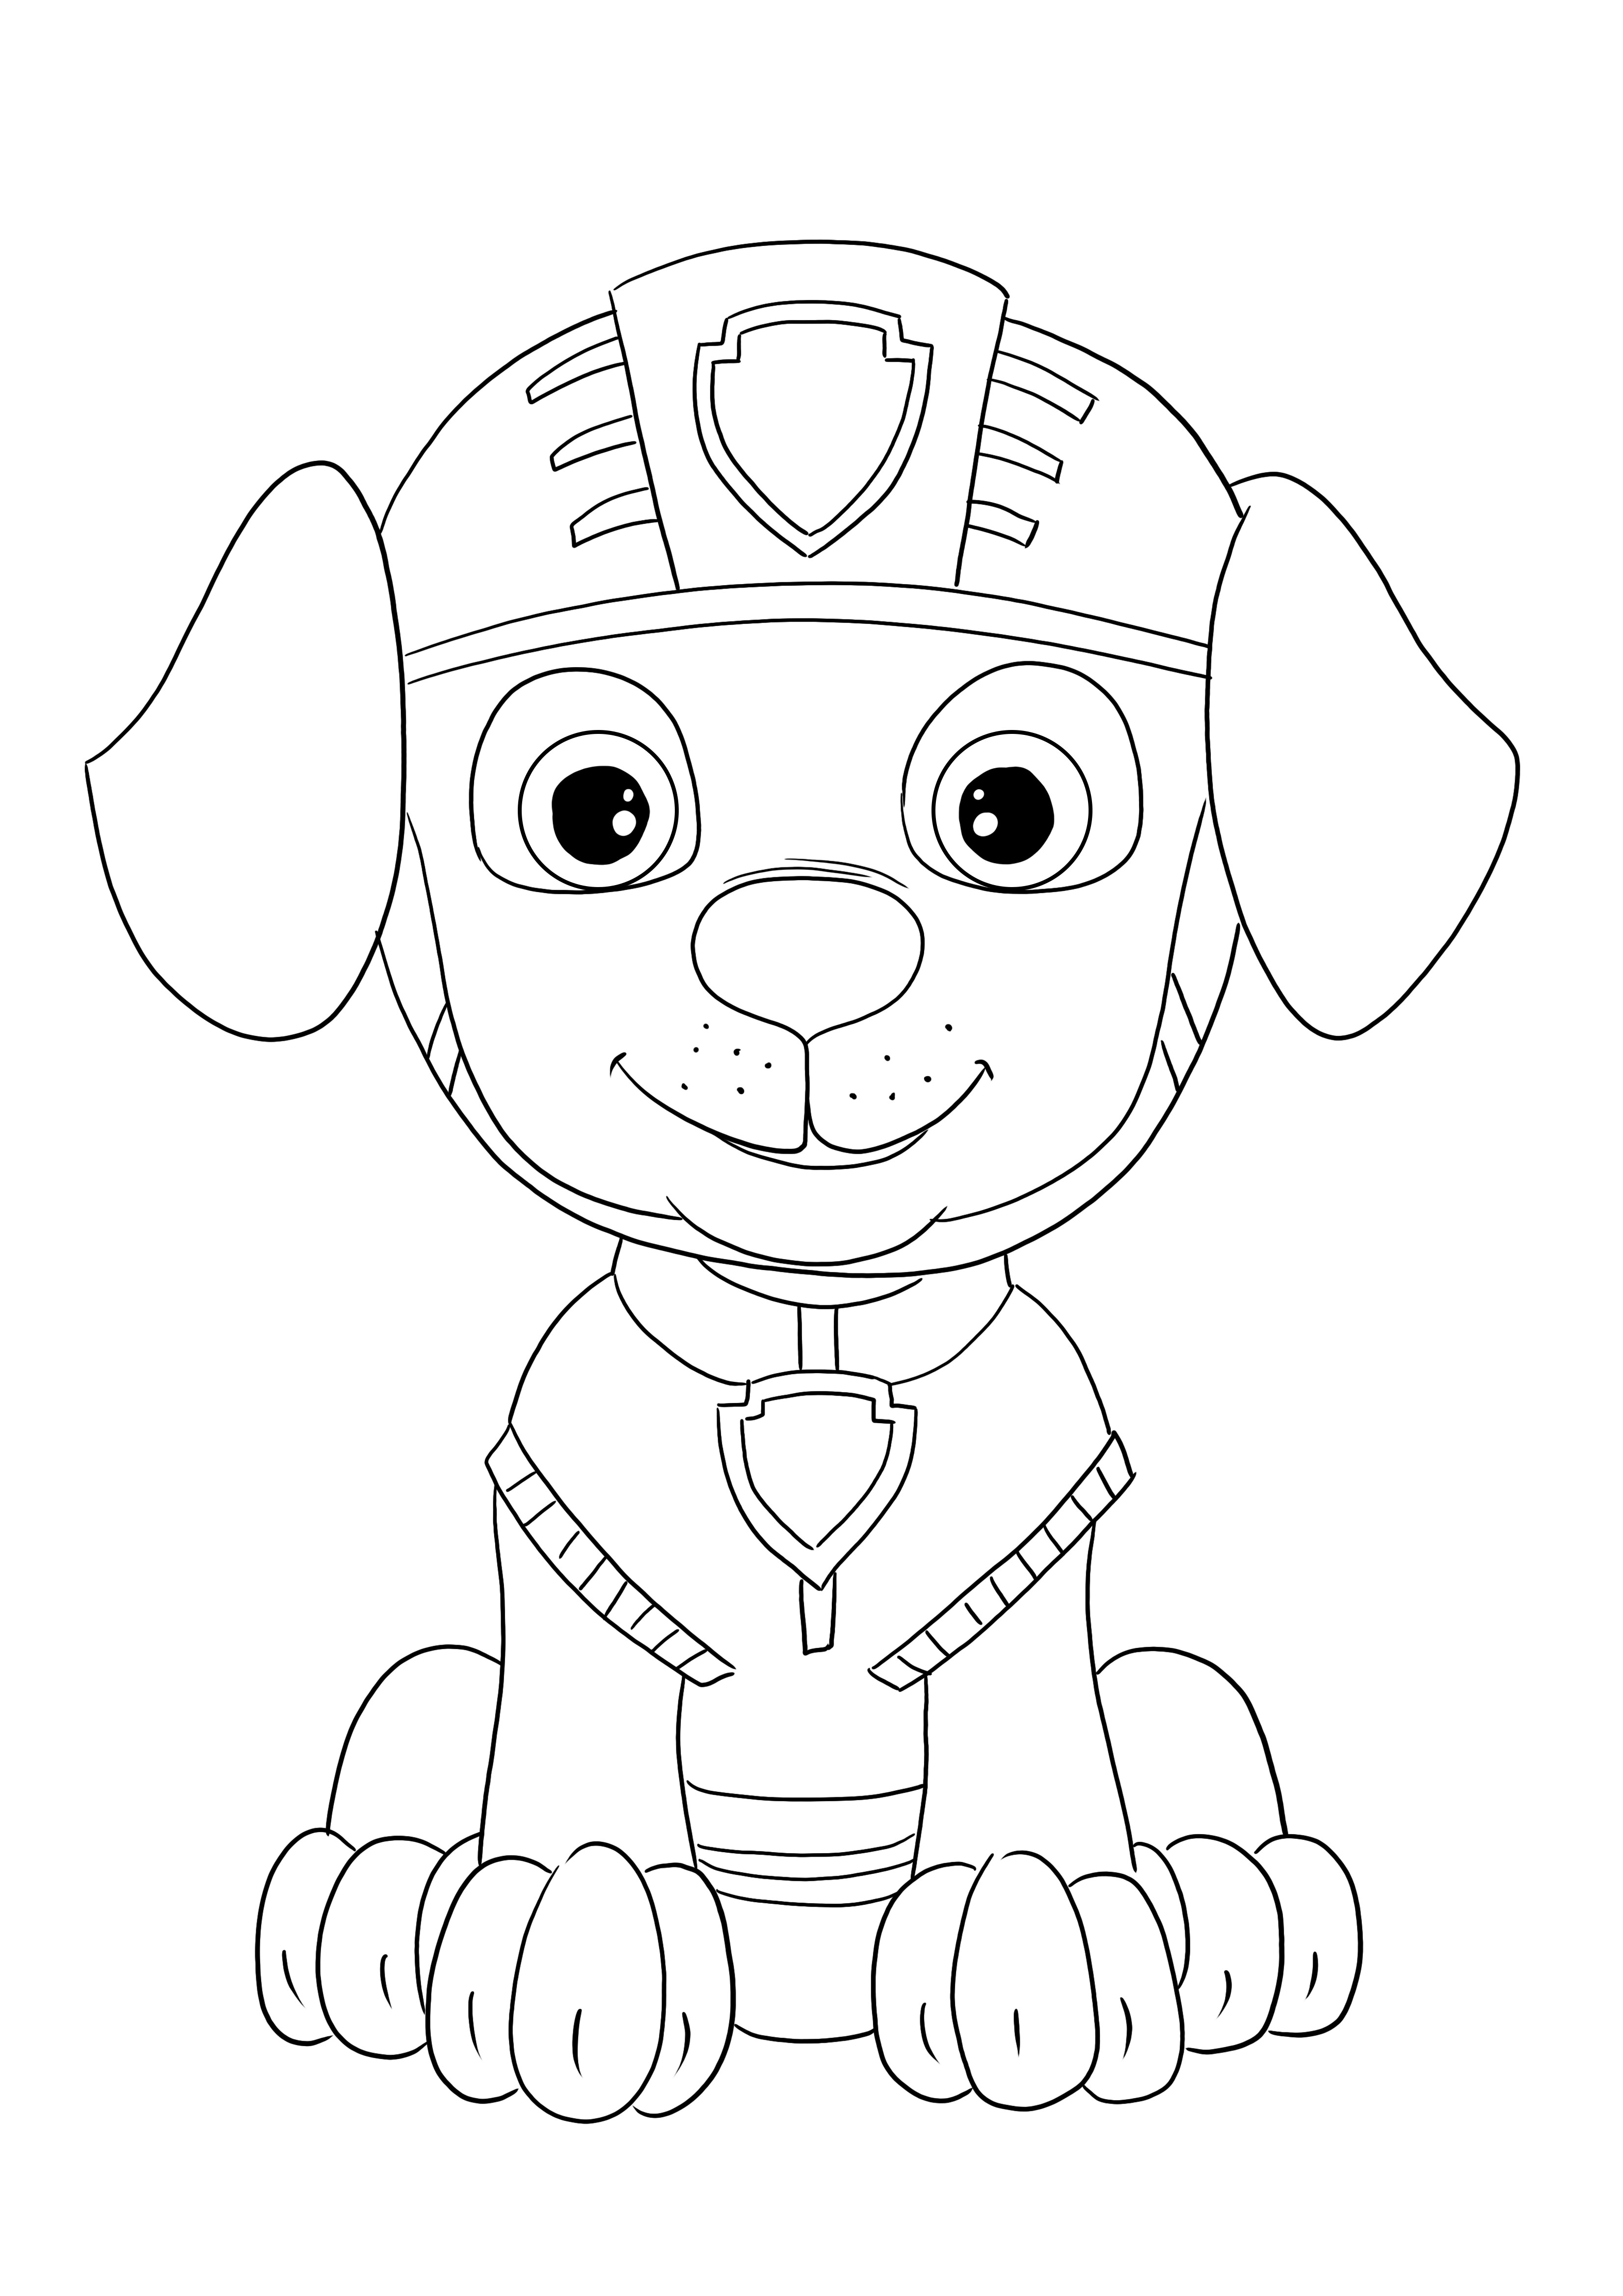 O download do Zooma da Patrulha Canina é gratuito para as crianças colorirem com diversão